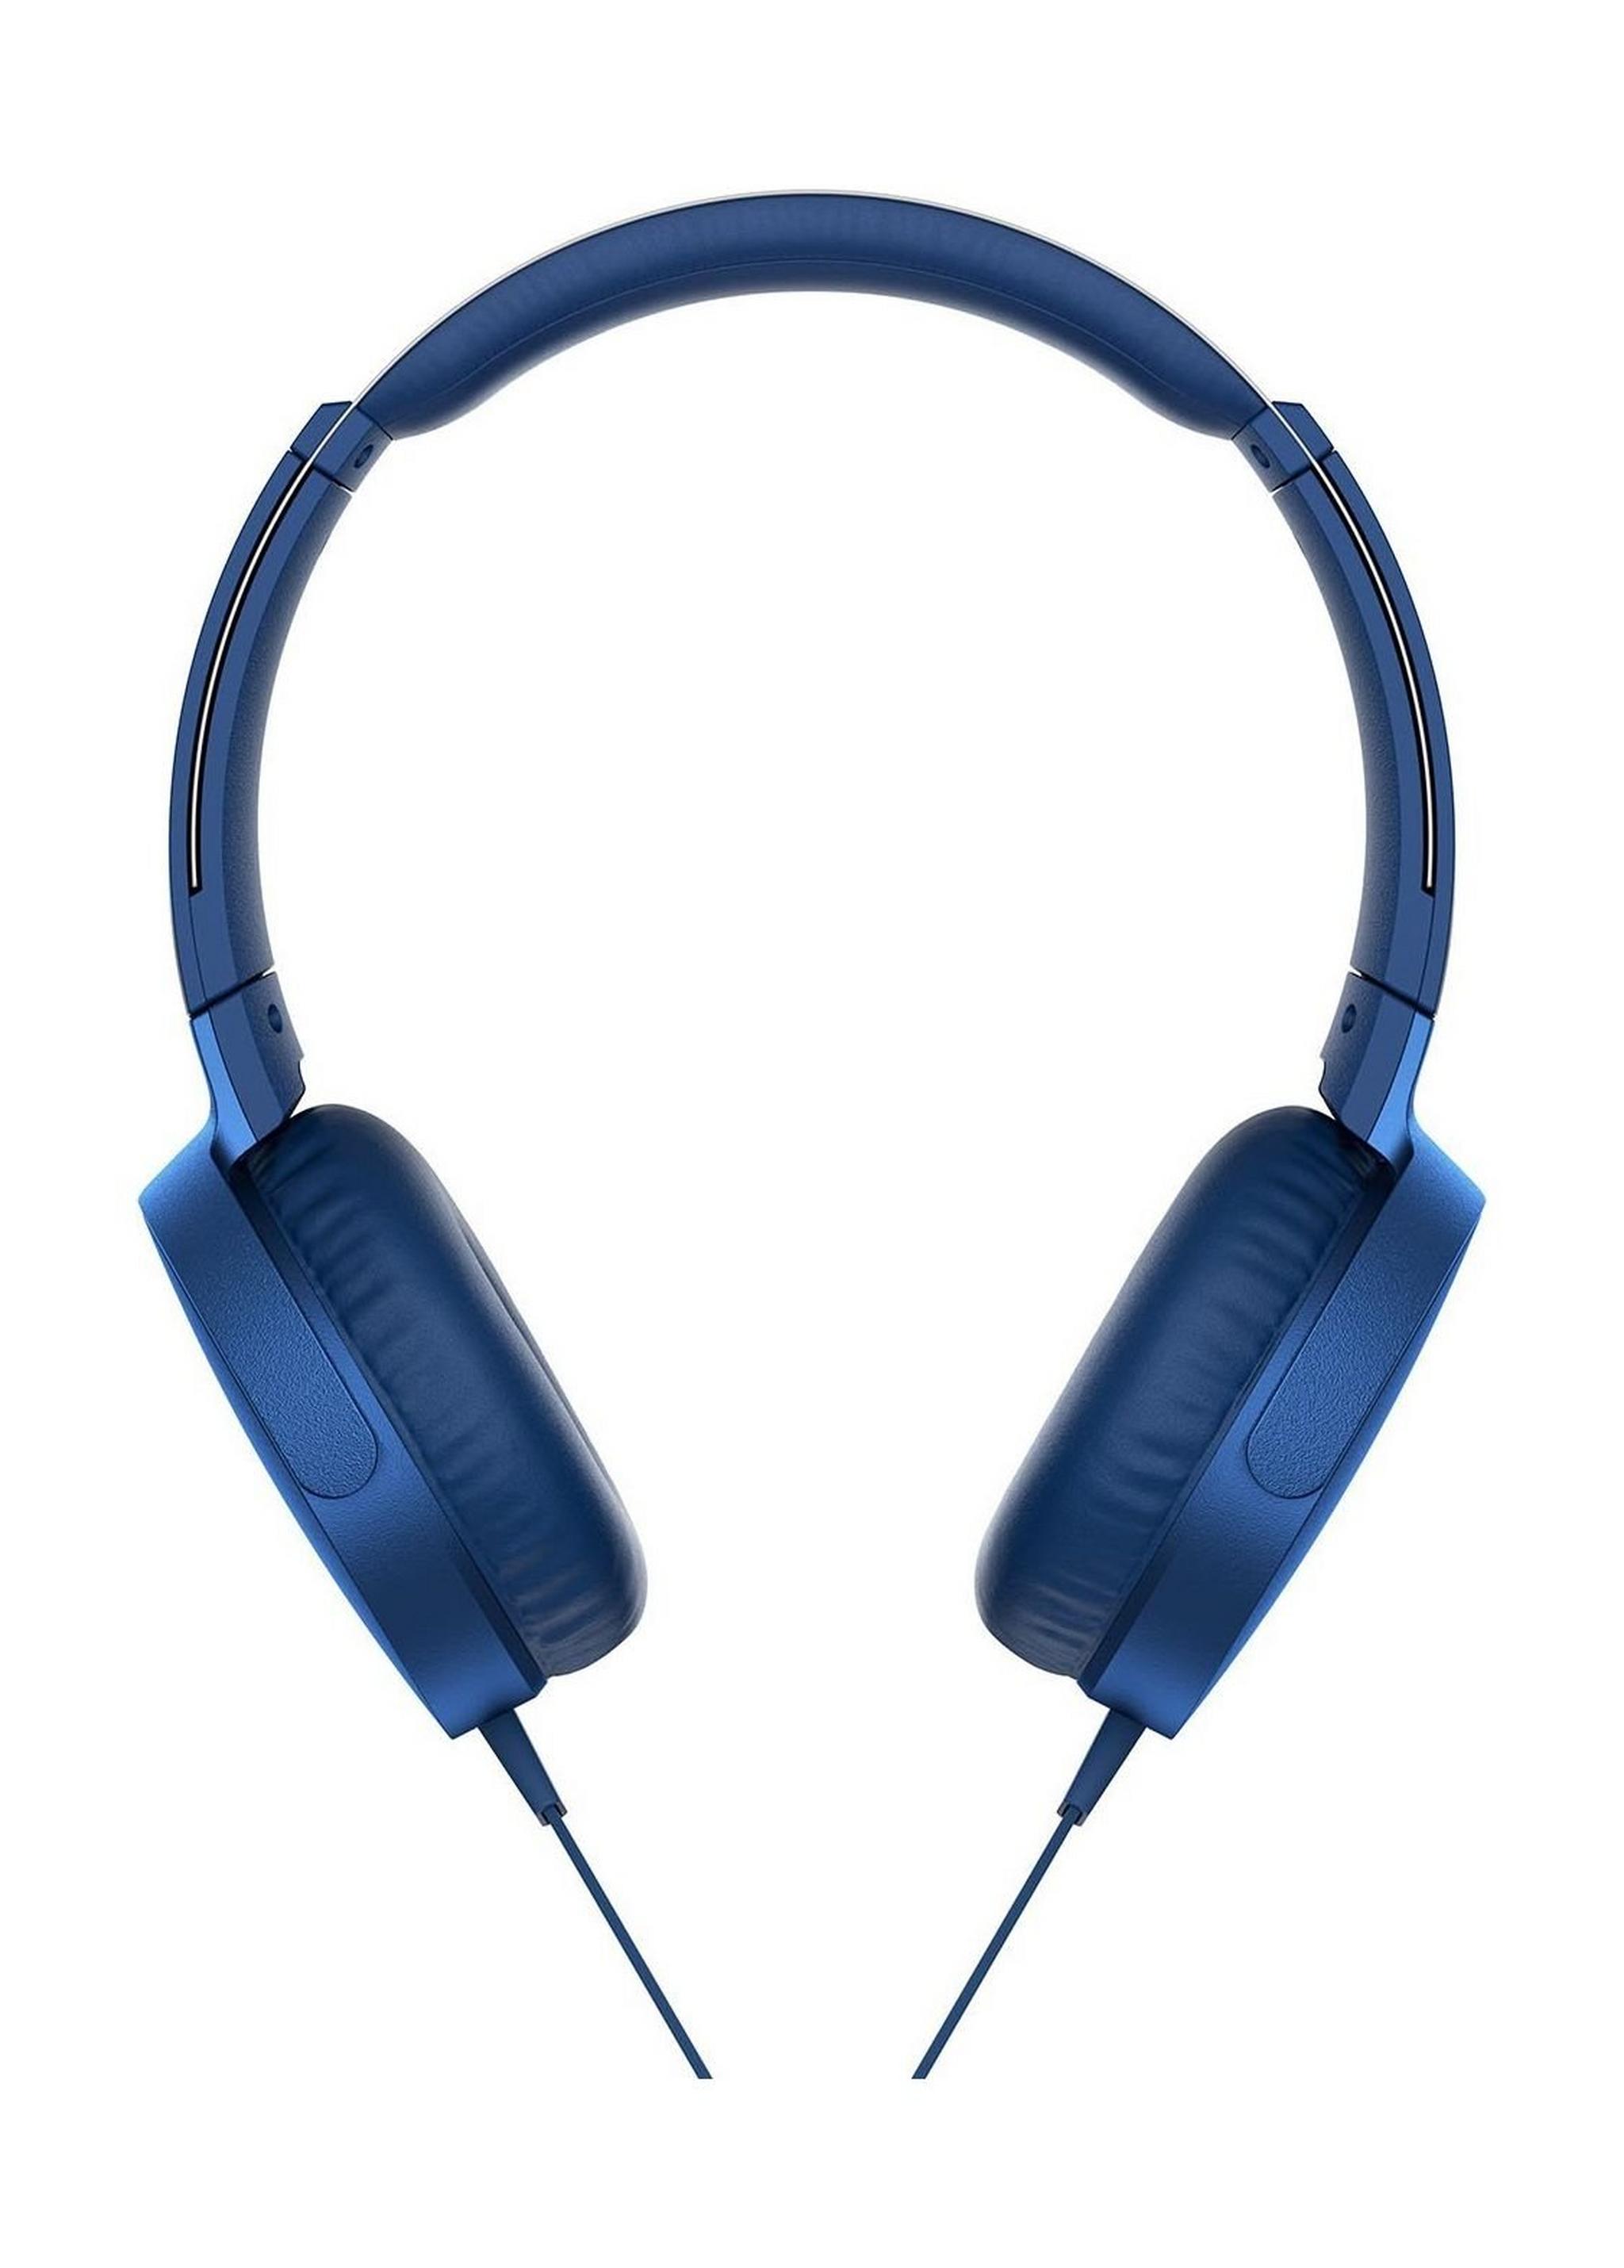 سماعة الرأس سوني للصوت العميق المضاعف - أزرق  (MDR-XB550AP)